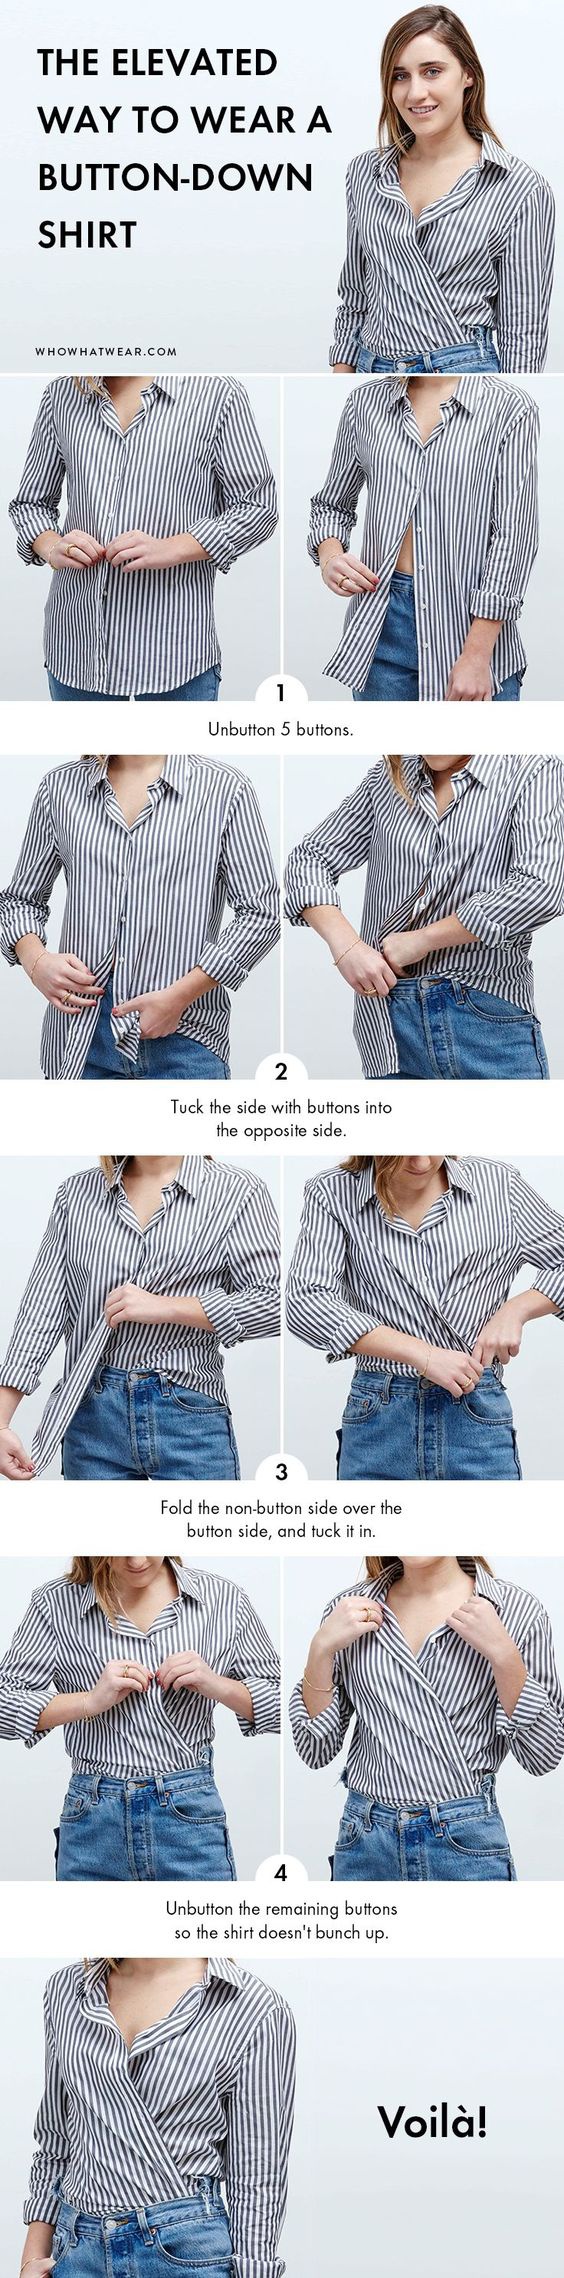 Новый способ носить старую блузку пригодится тем кто похудел